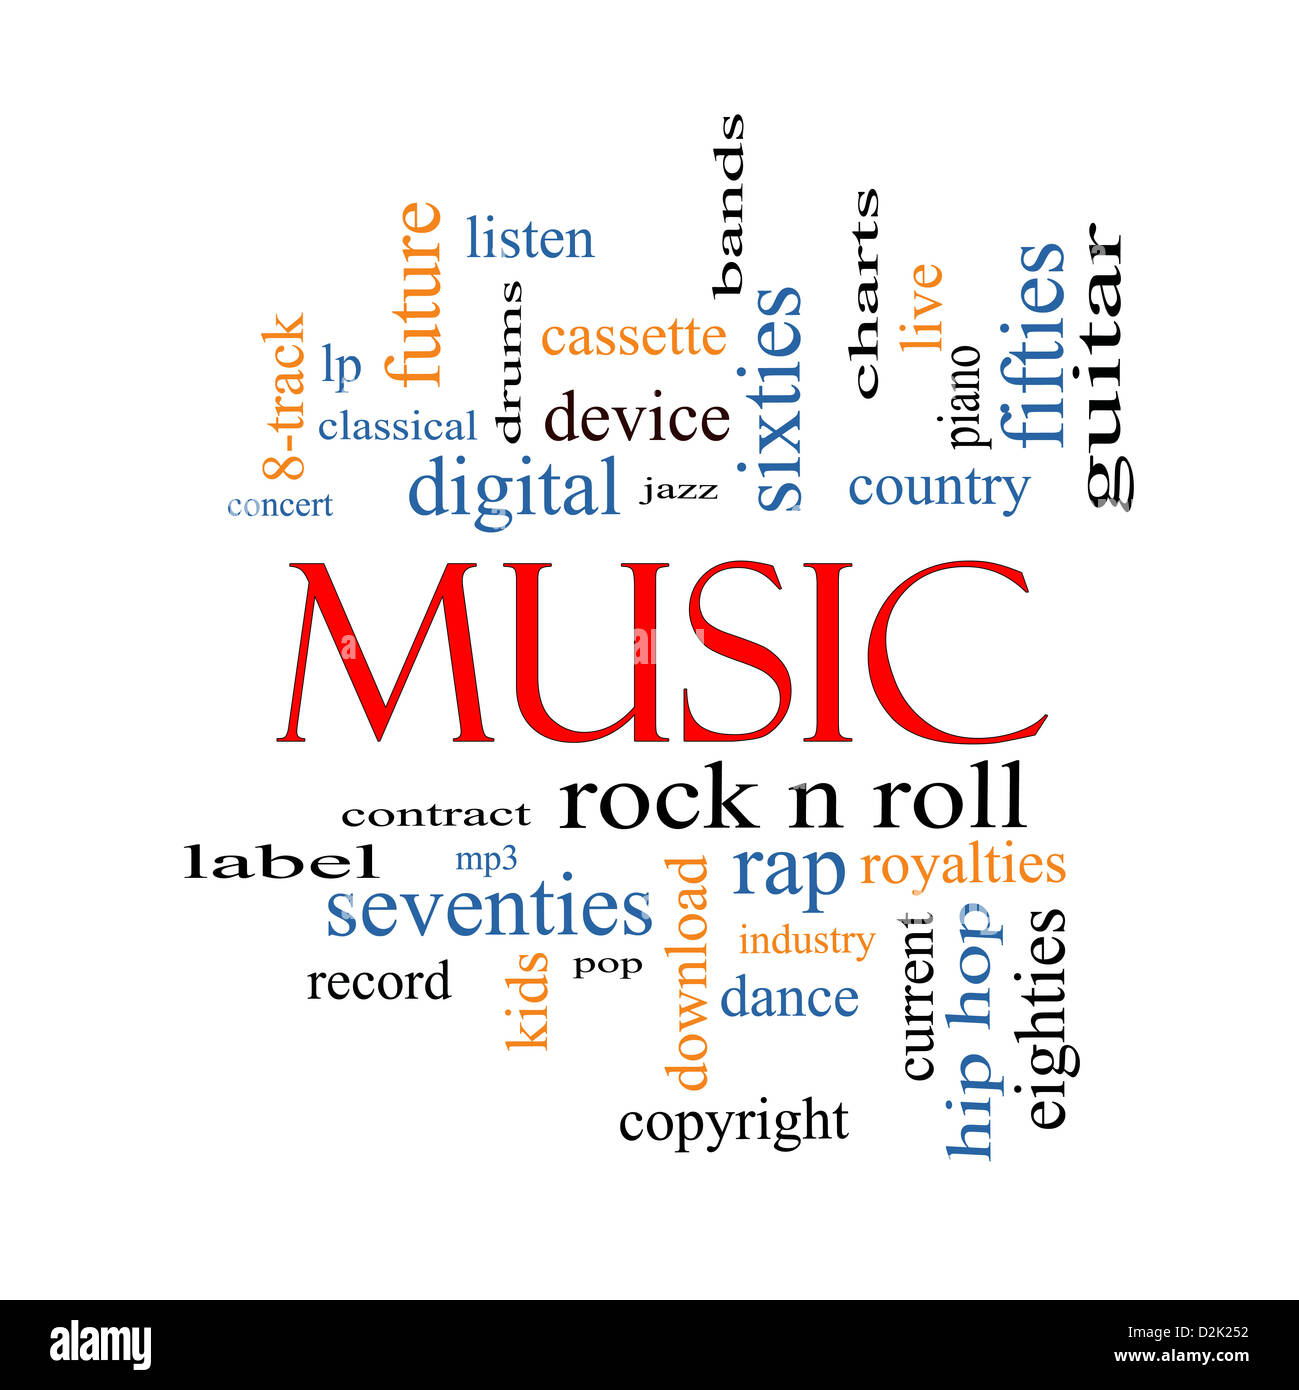 Música palabra nube concepto con gran términos como rock n roll, rap, pop, descargar, lp y más. Foto de stock